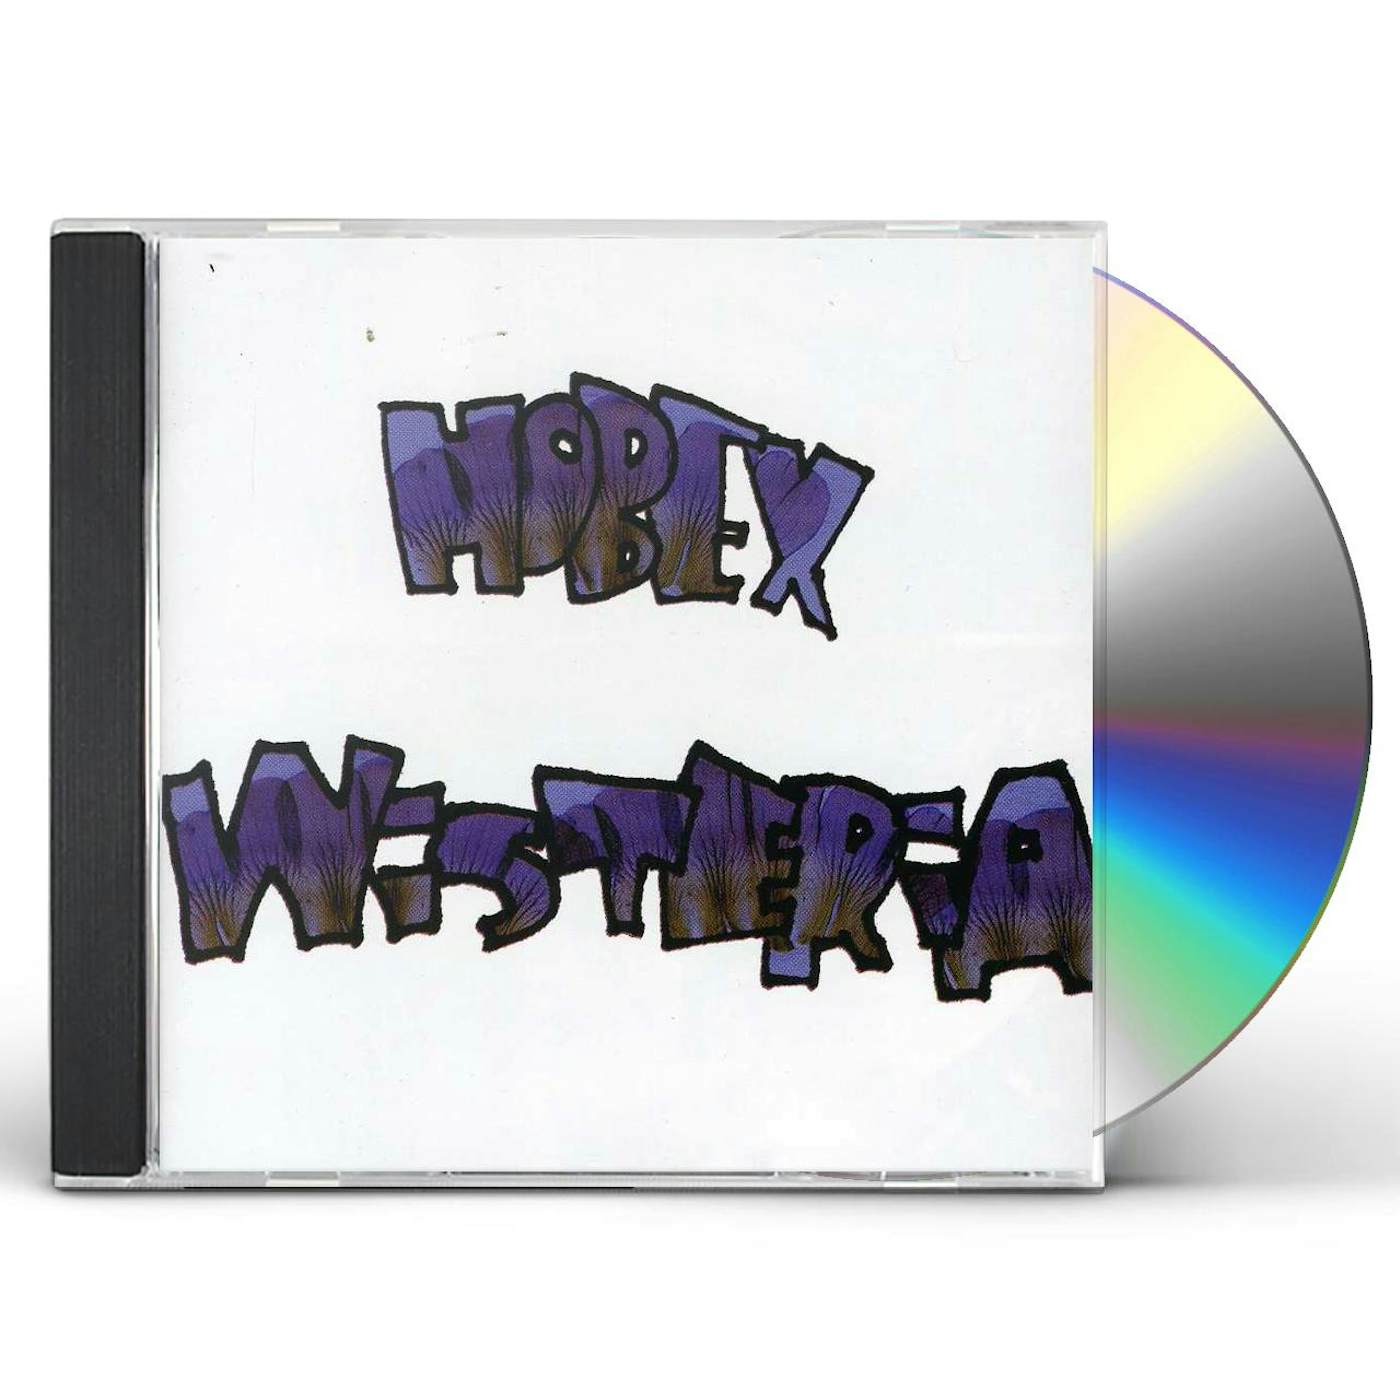 Hobex WISTERIA CD